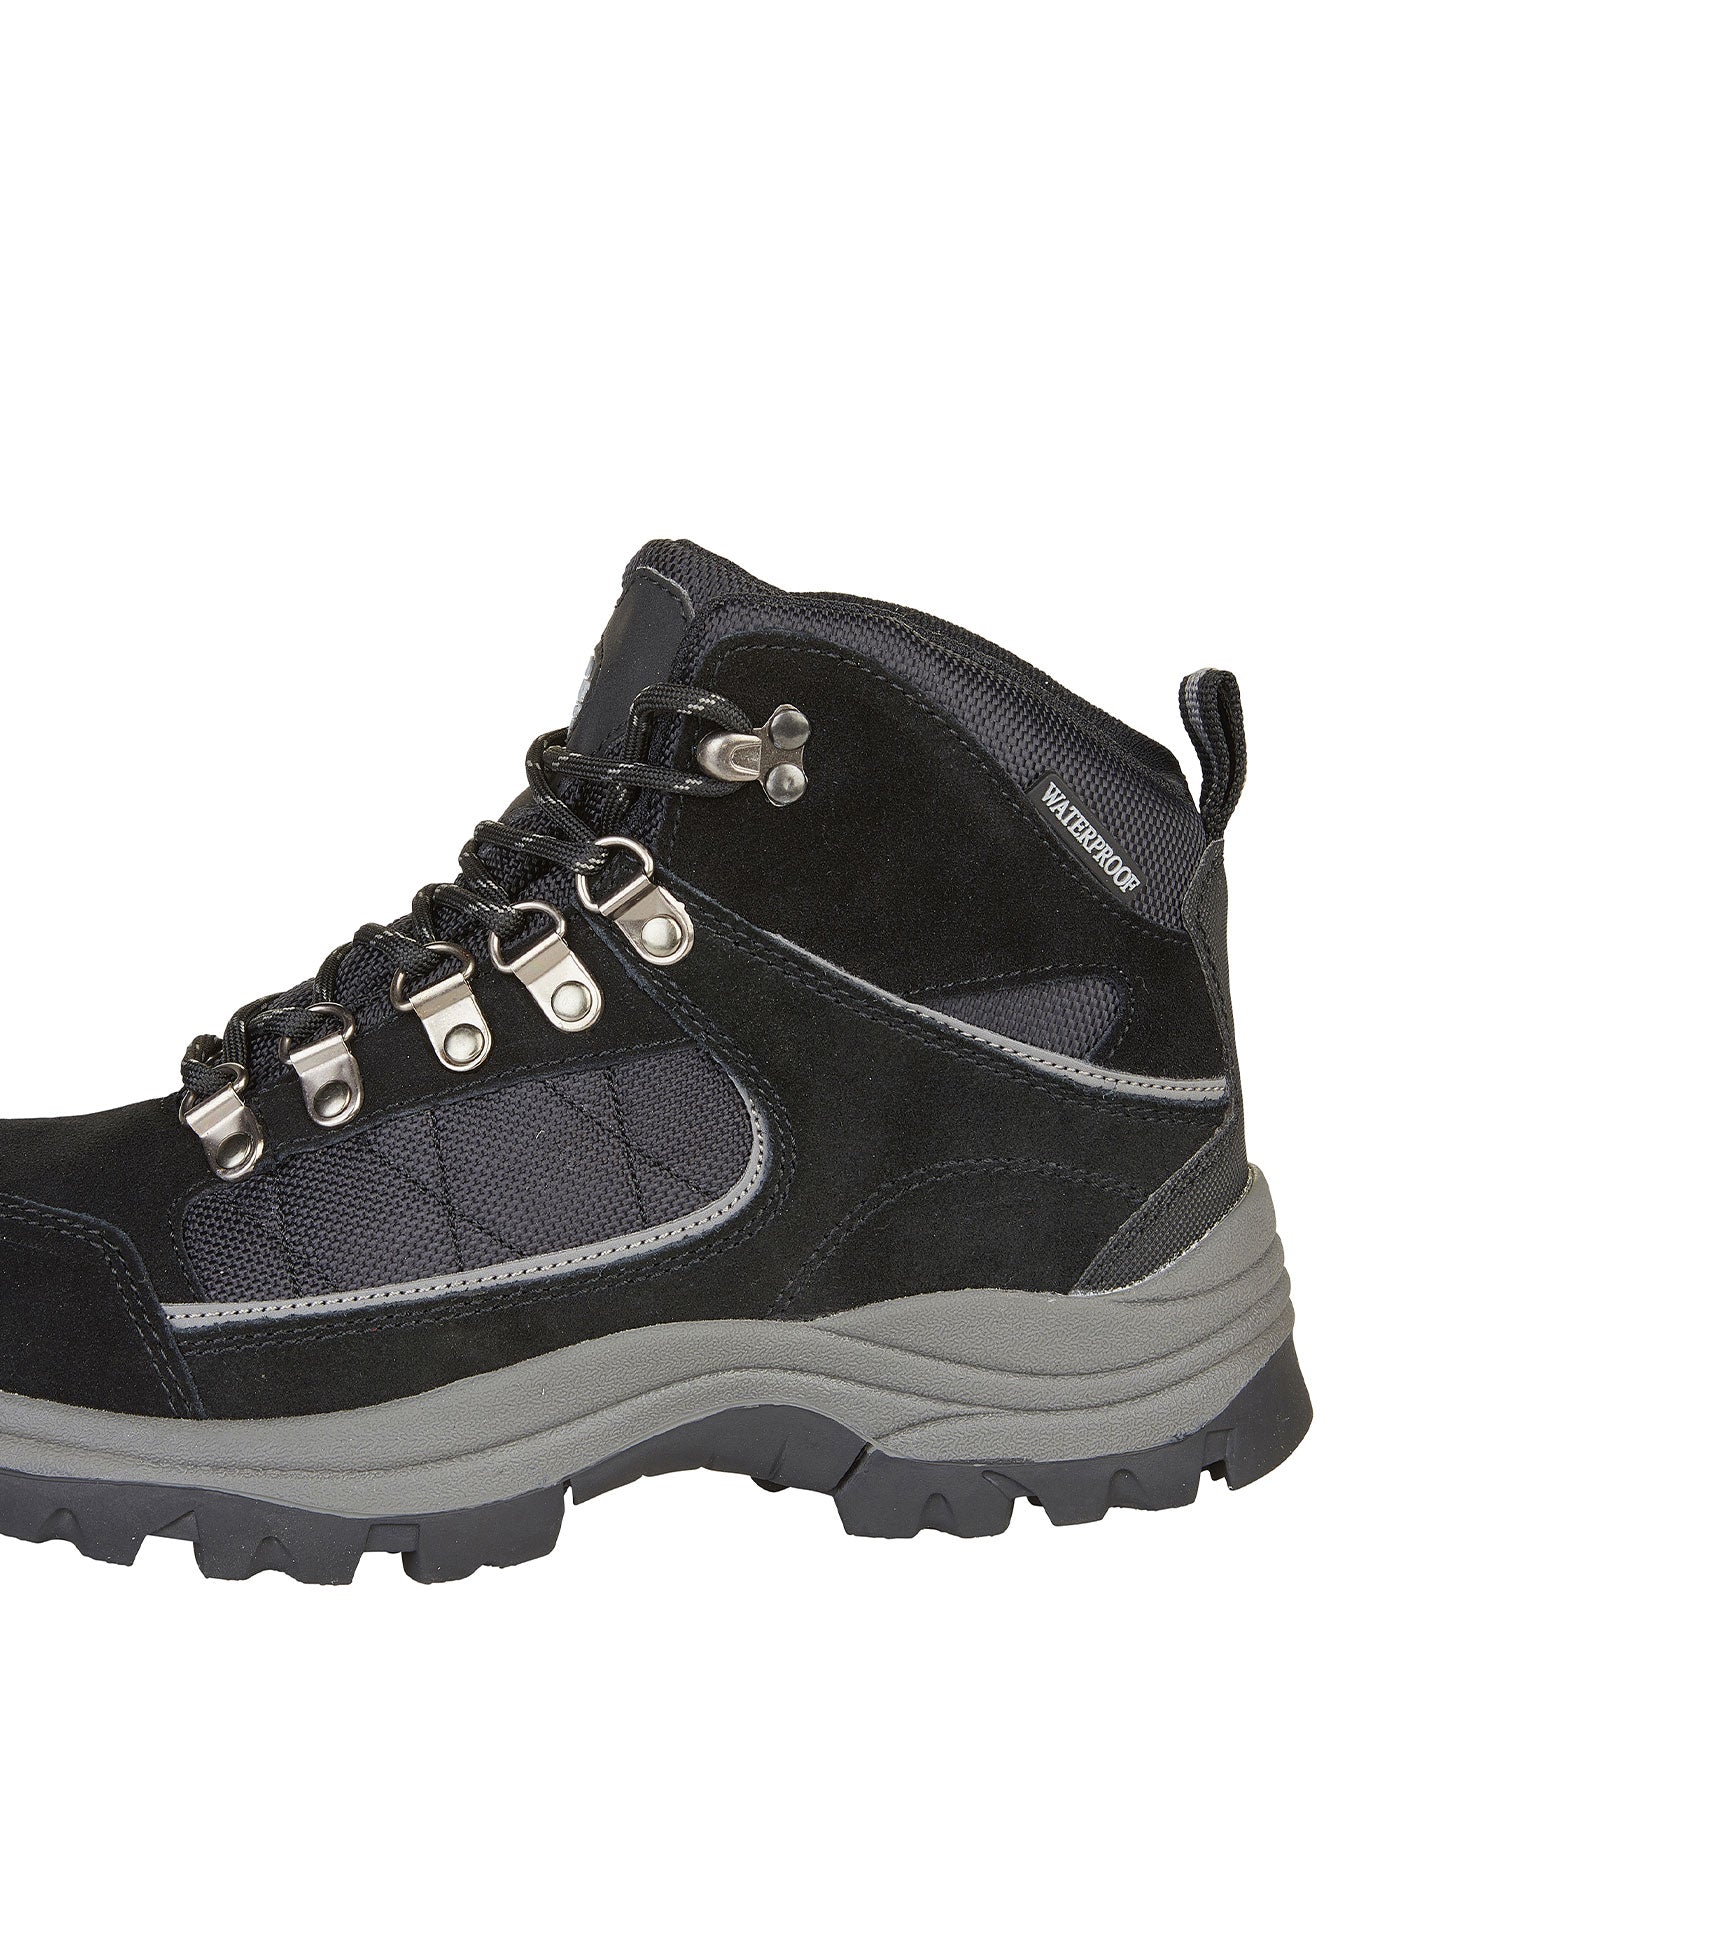 Women's Suede Leather Waterproof Walking Boots - Women's Suede Leather Waterproof Walking Boots